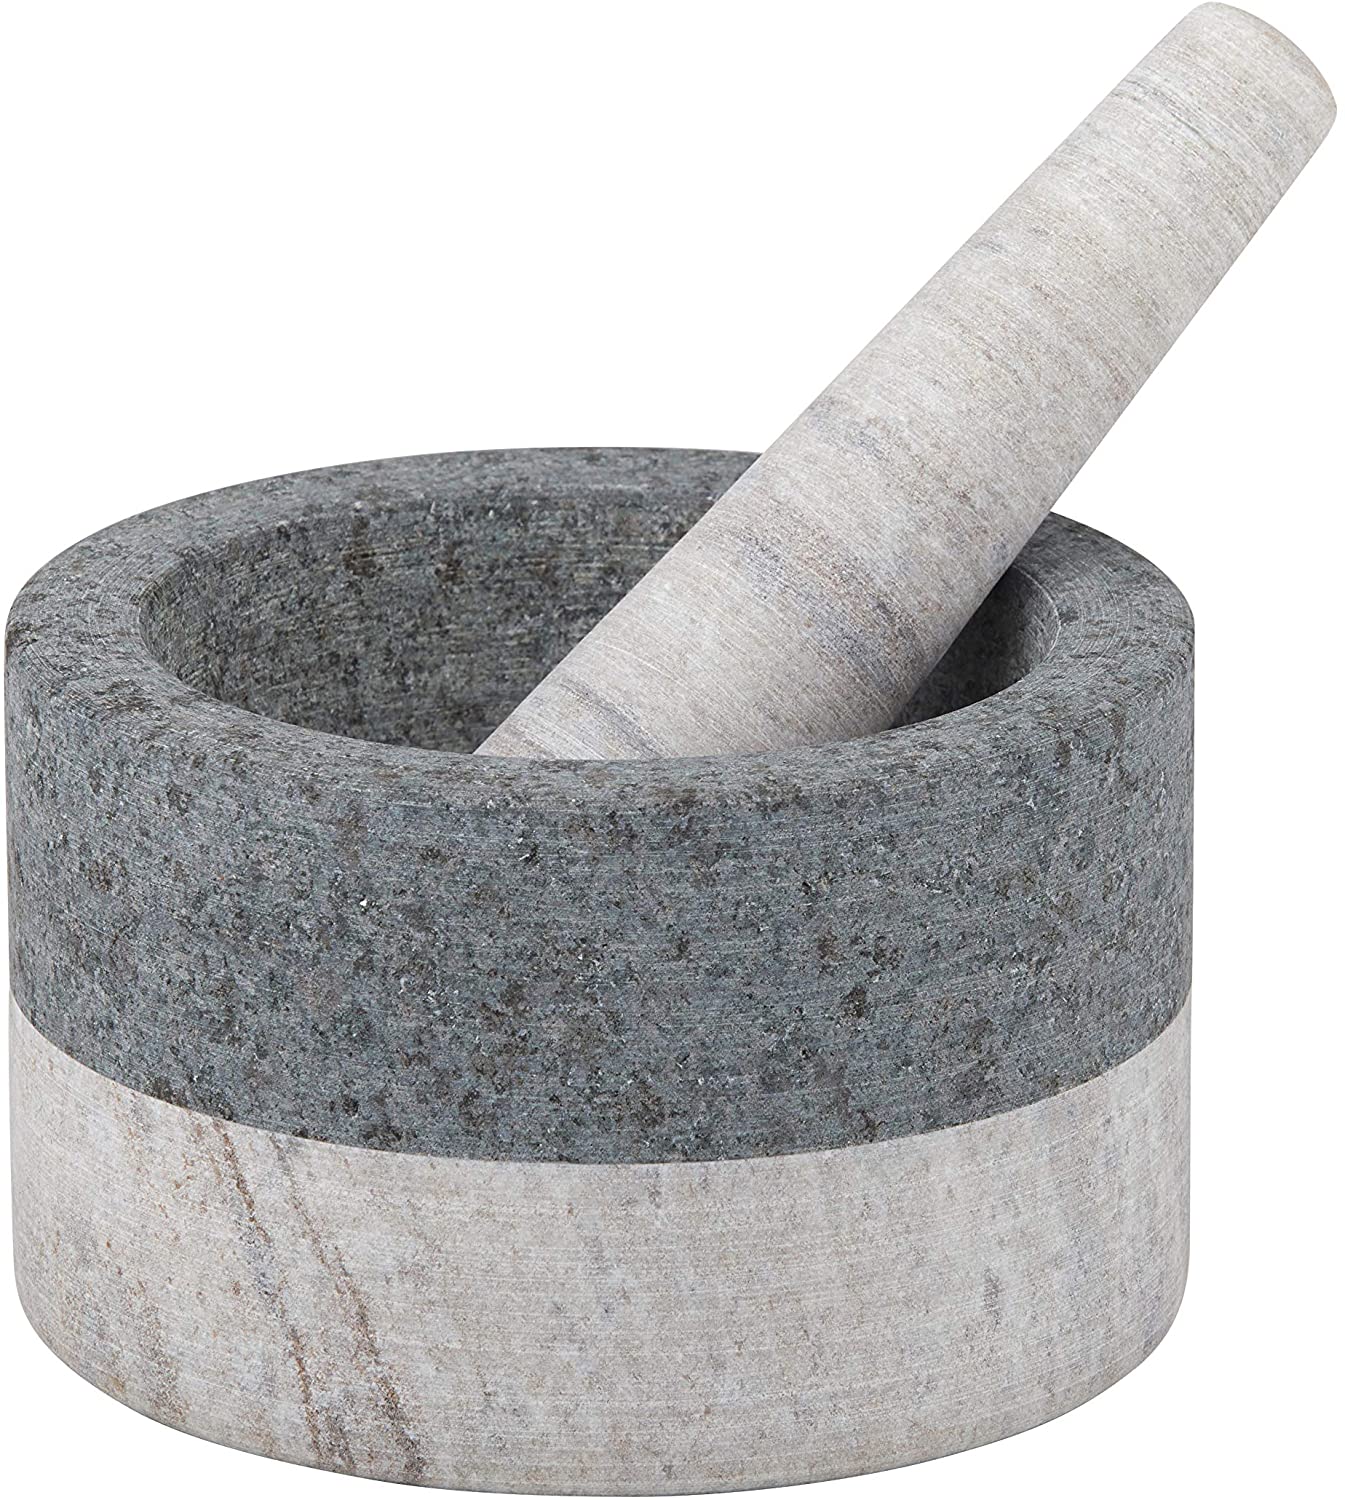 Akin Granite/Marble Mortar & Pestle 17x10.5cm